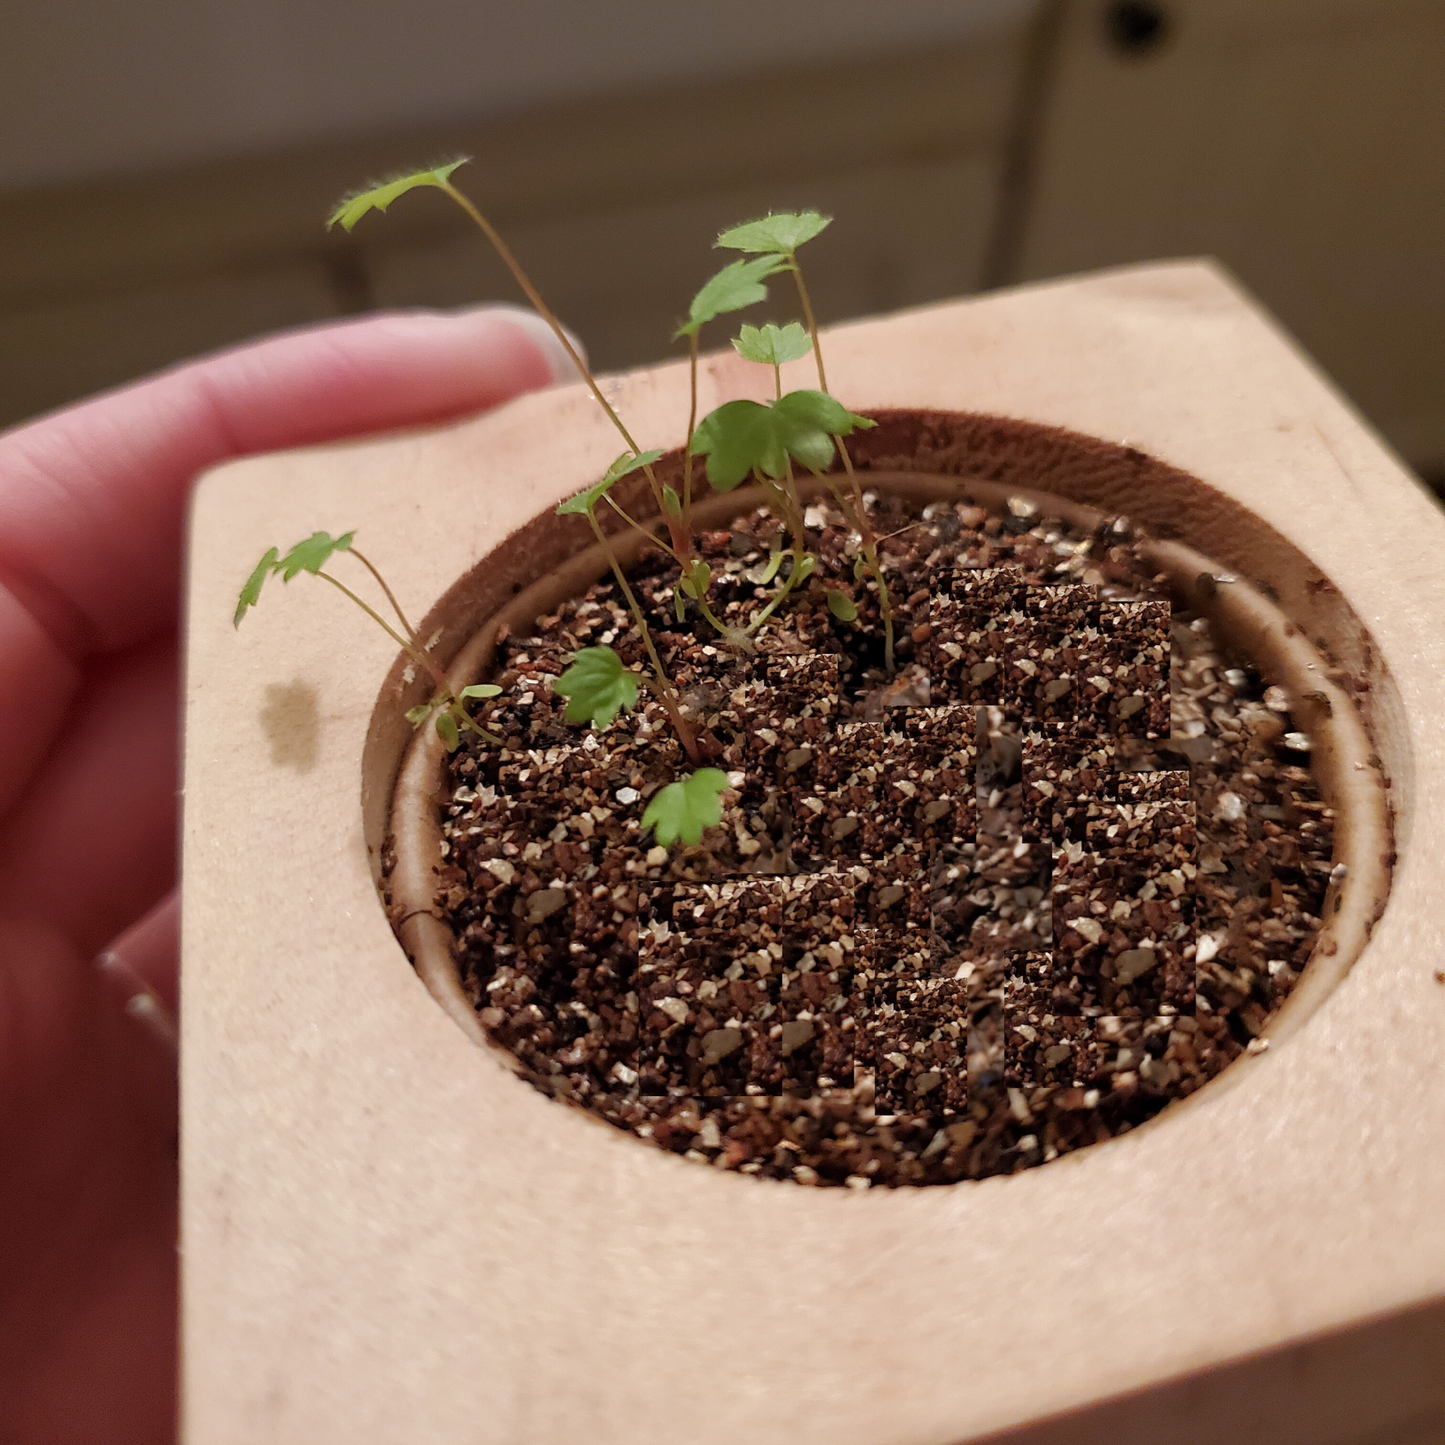 Grow Kit - Strawberry - Sprigbox